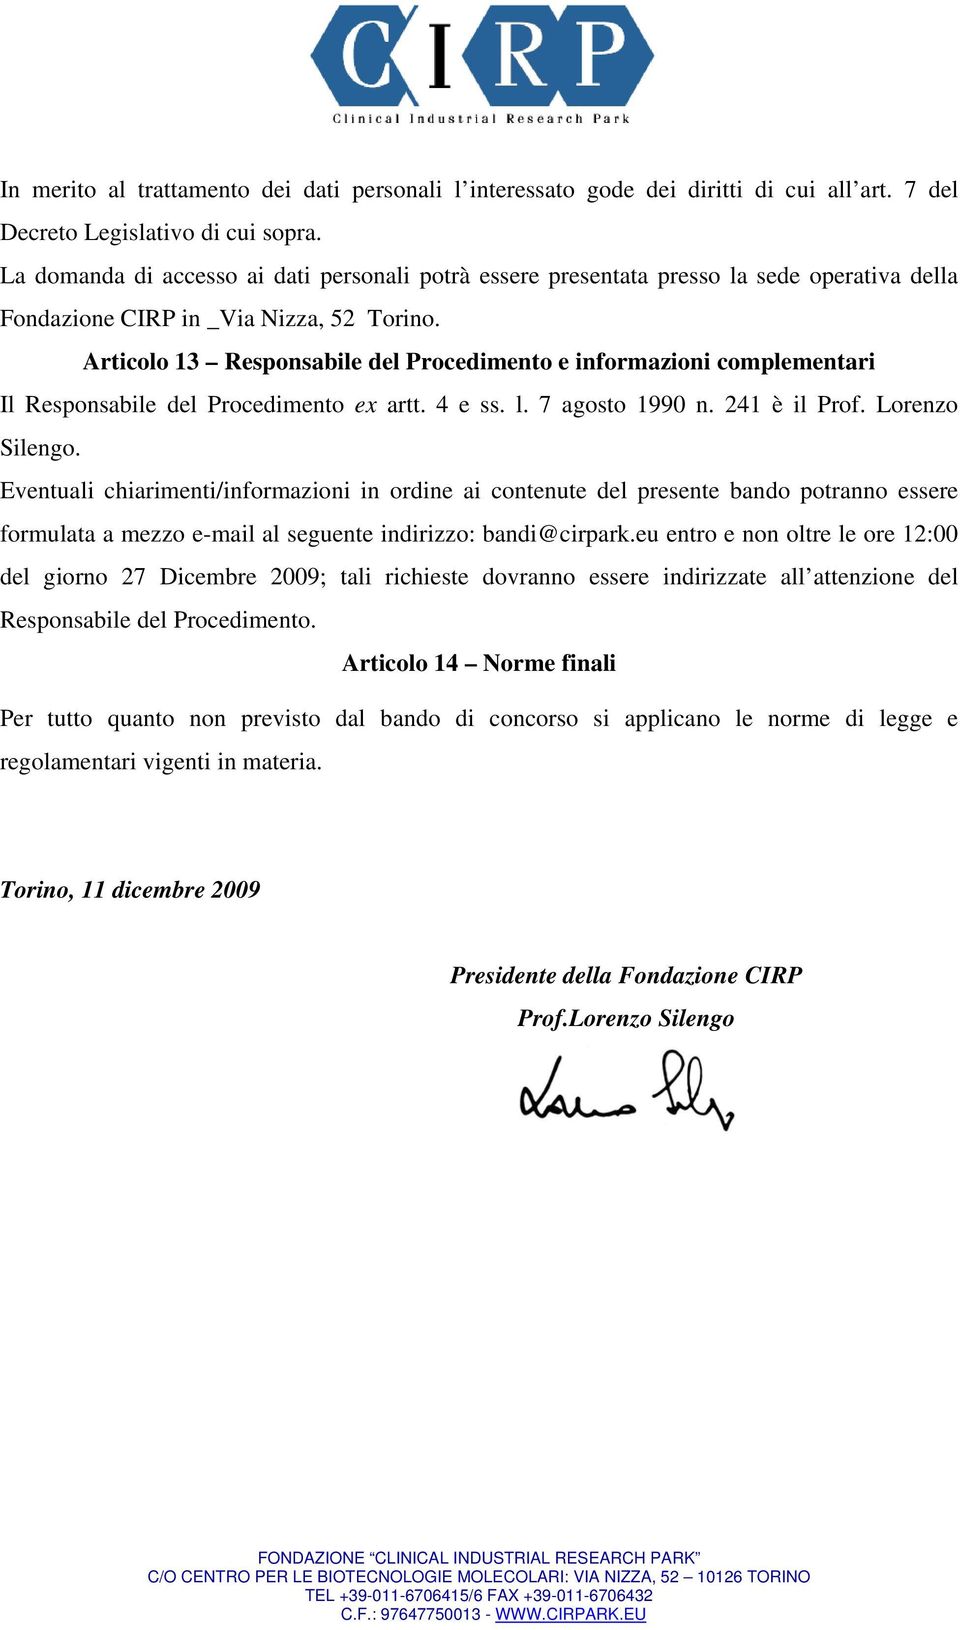 Articolo 13 Responsabile del Procedimento e informazioni complementari Il Responsabile del Procedimento ex artt. 4 e ss. l. 7 agosto 1990 n. 241 è il Prof. Lorenzo Silengo.